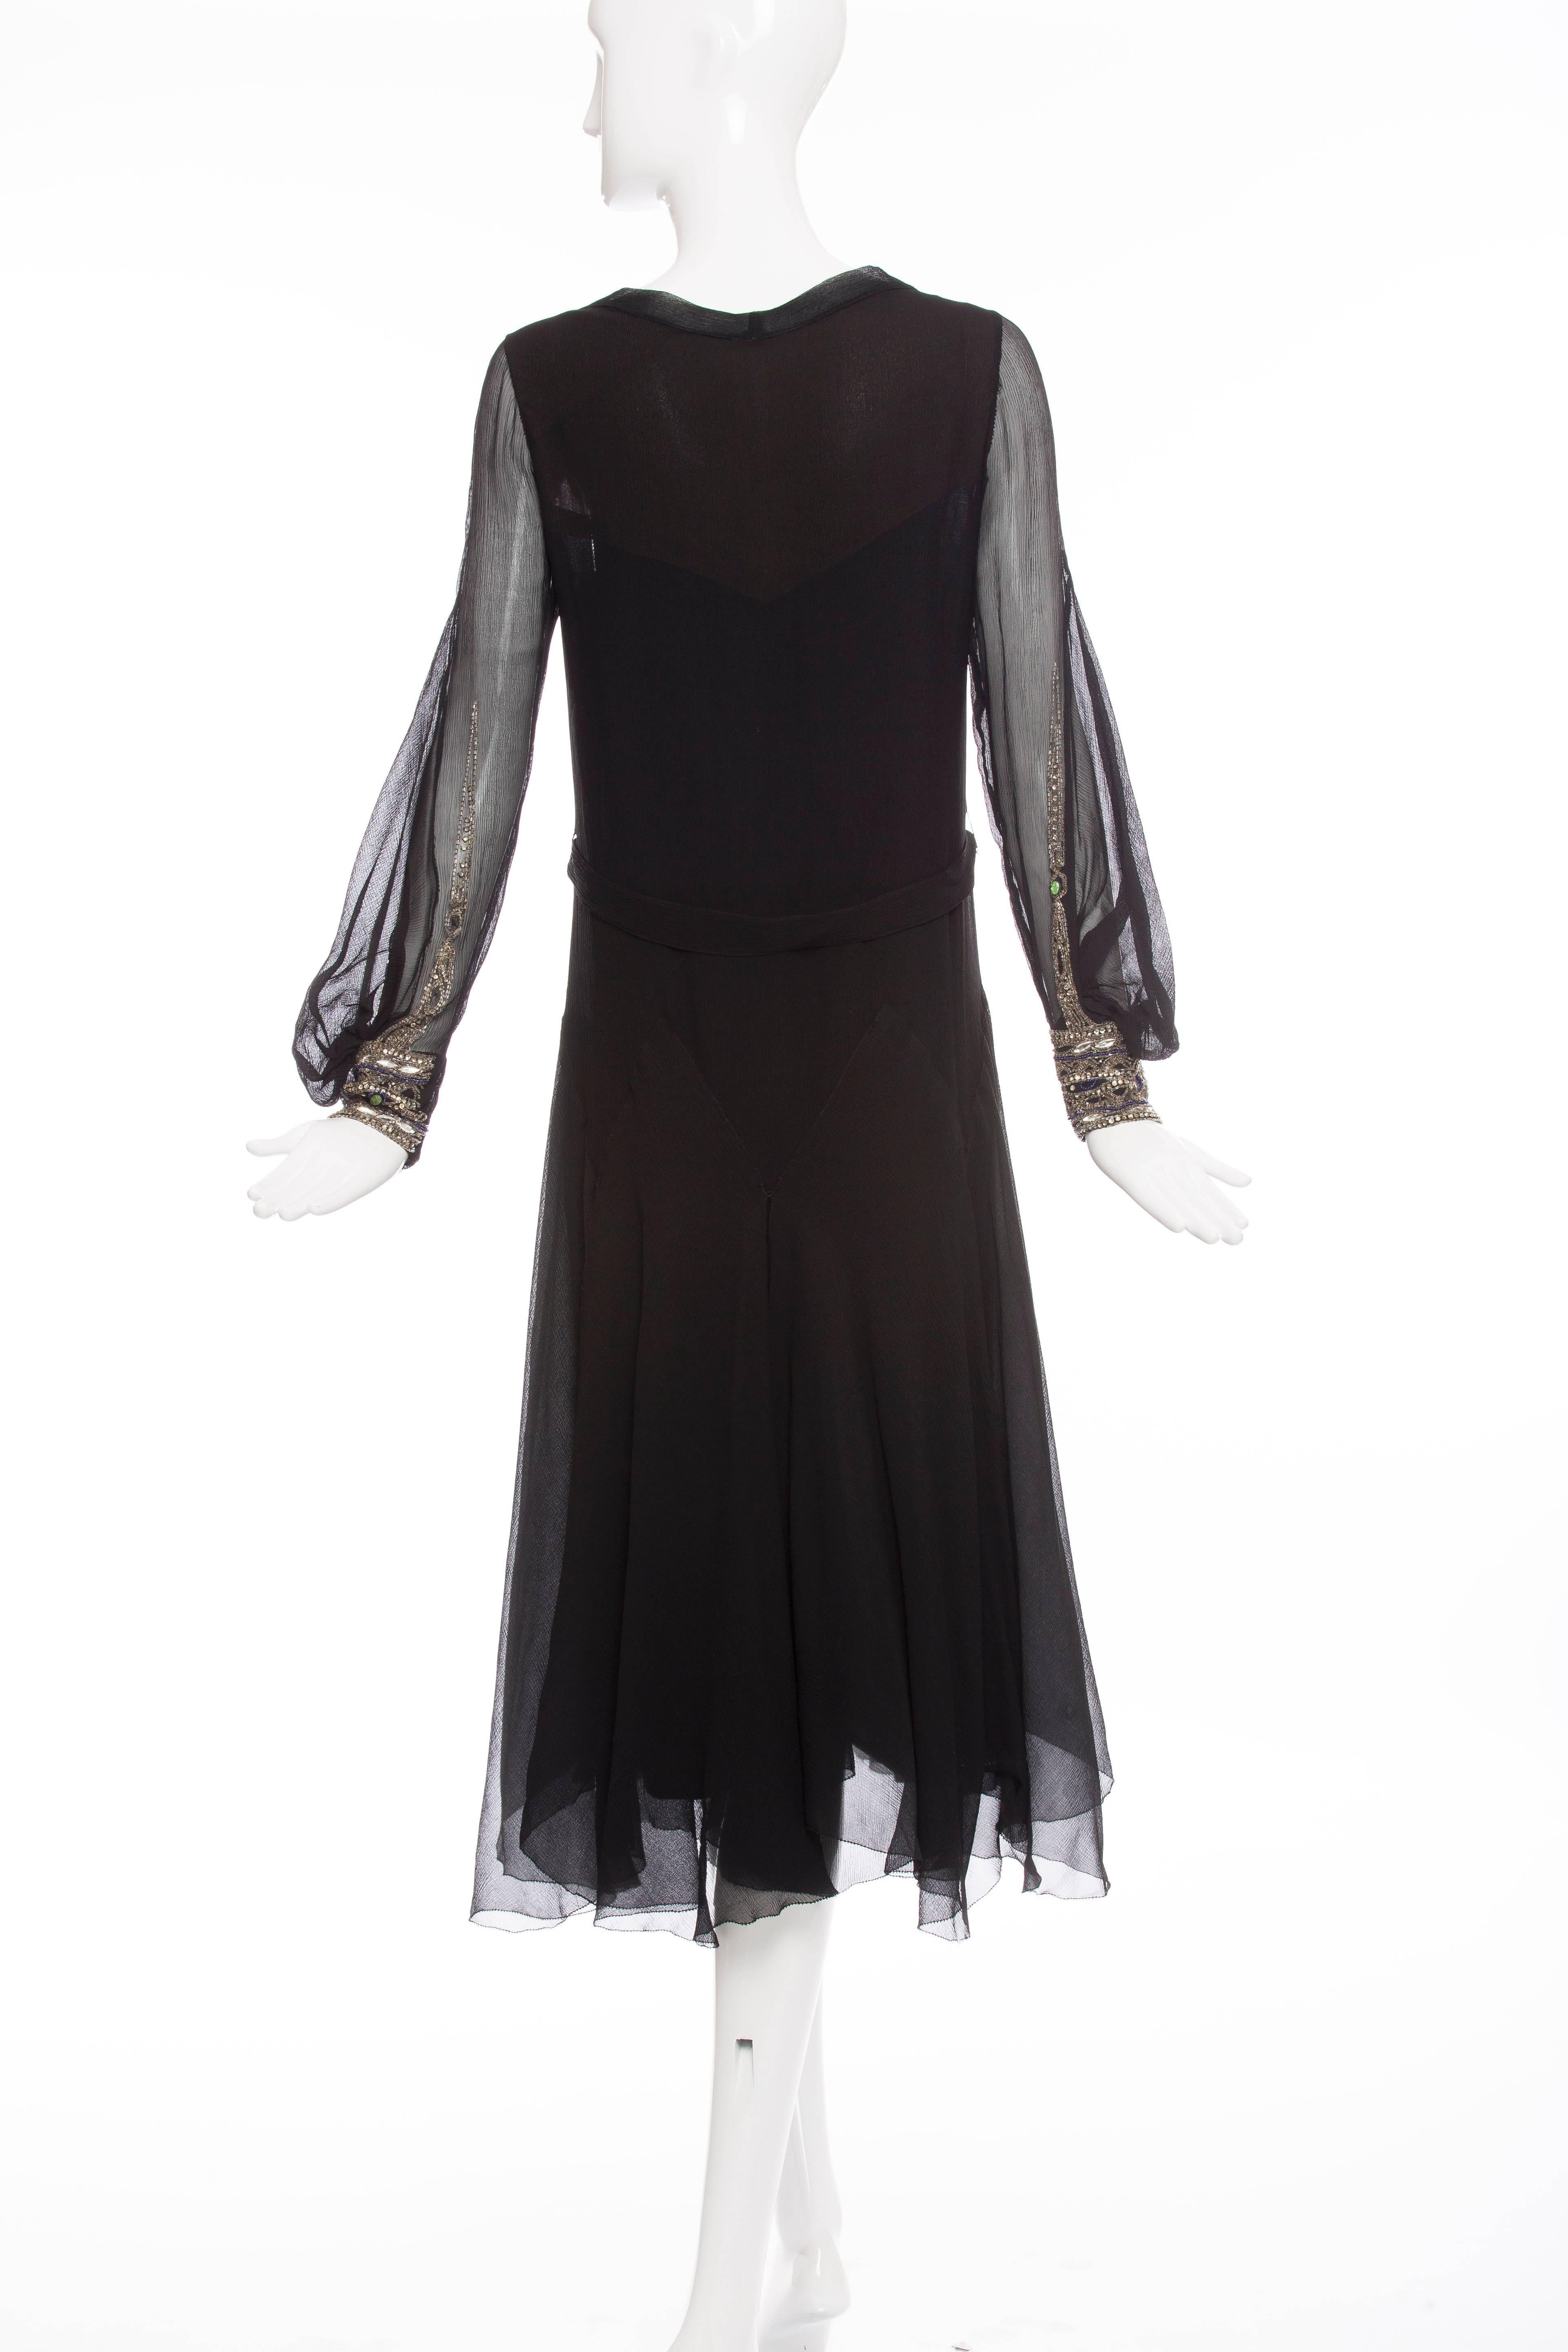 Circa 1930's Silk Chiffon Dress  In Good Condition For Sale In Cincinnati, OH